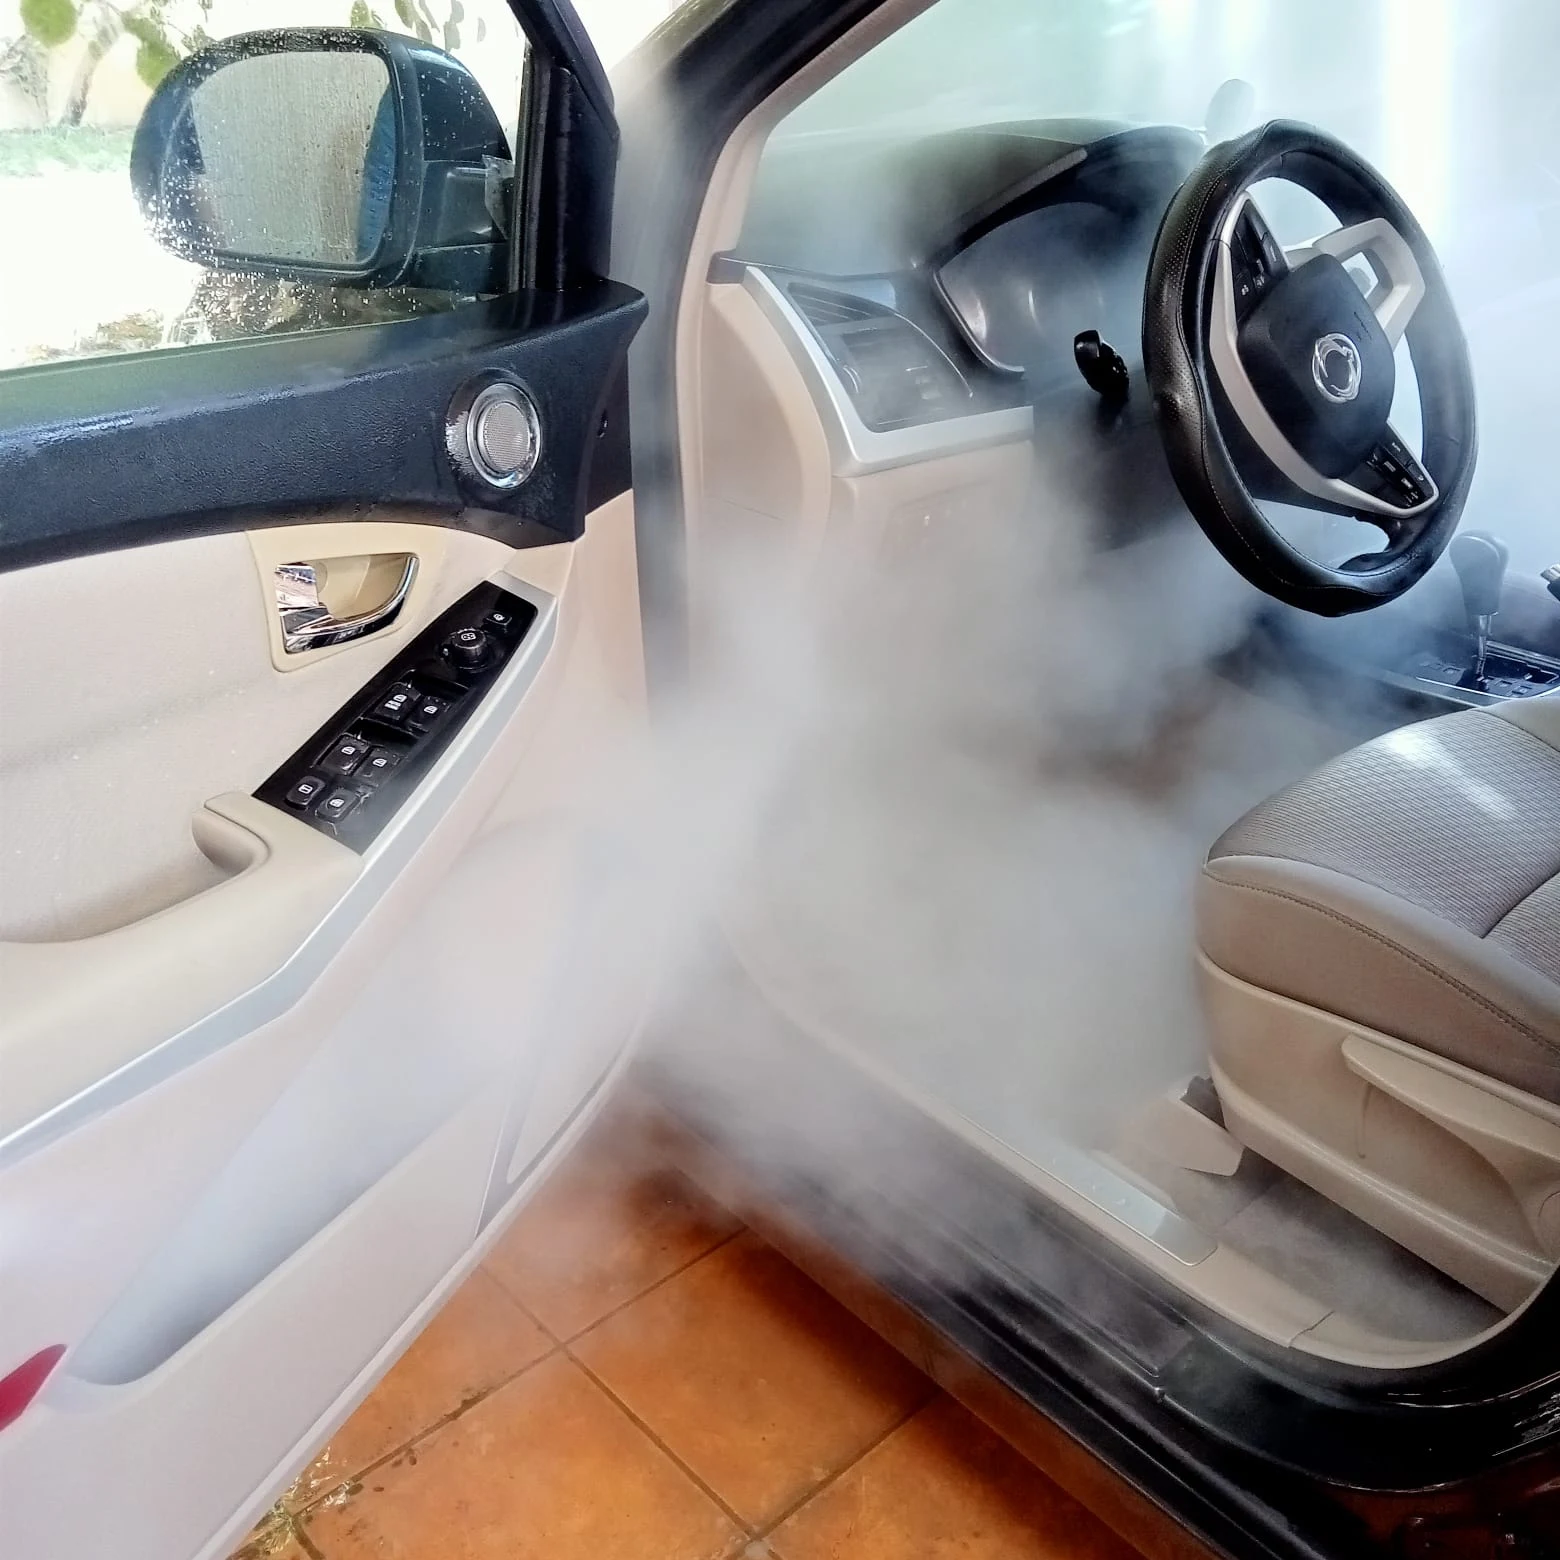 غسيل سيارات بالبخار # سولى استار - حماية البيئة والحفاظ على الماء